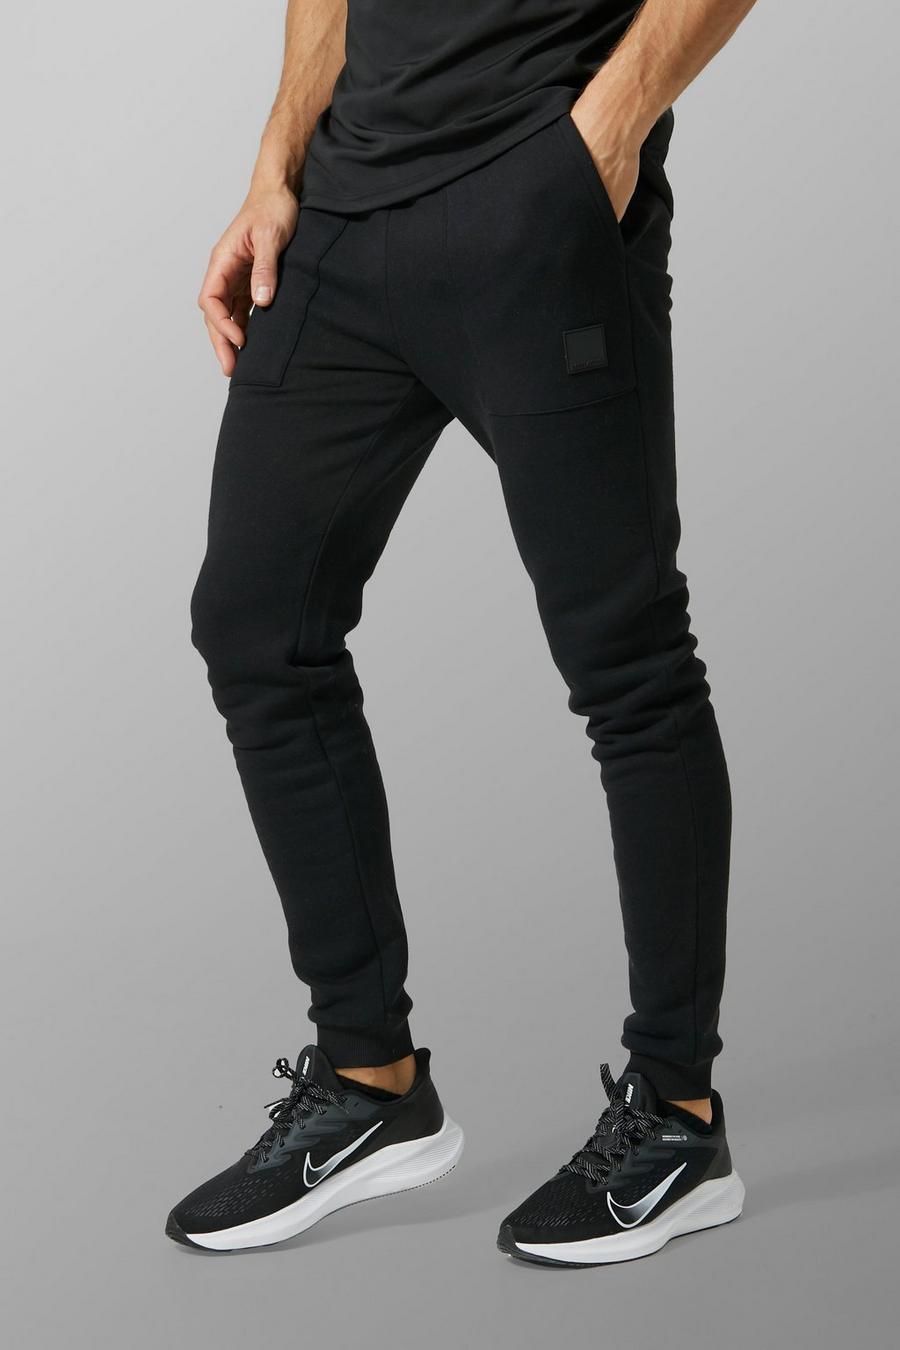 Pantaloni tuta Tall Man Active Gym con dettagli su una tasca, Black negro